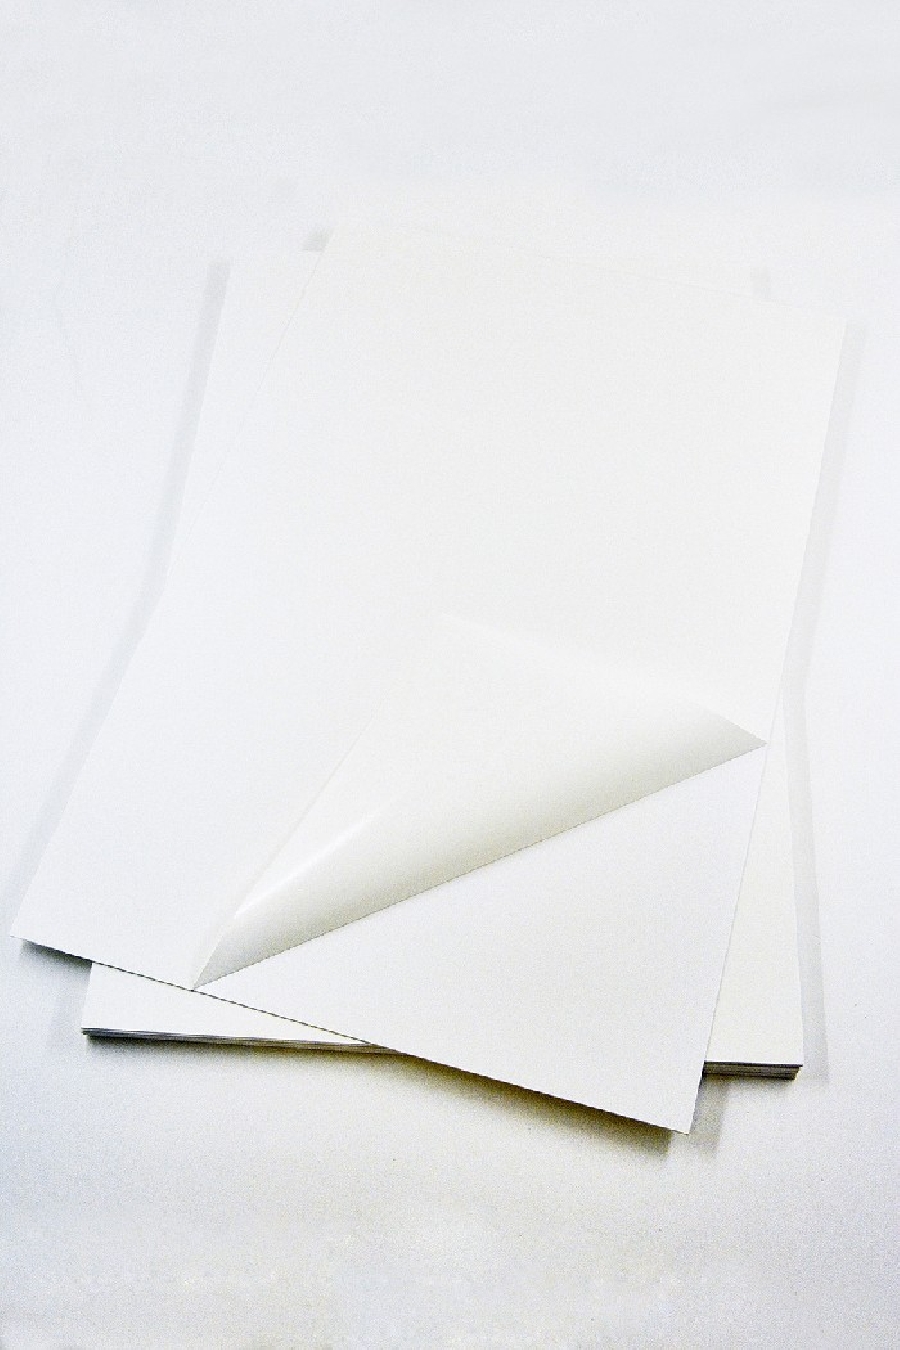 Пластик самоклеящийся двухсторонний (ПВХ лист) 1,5мм 31x31см белый